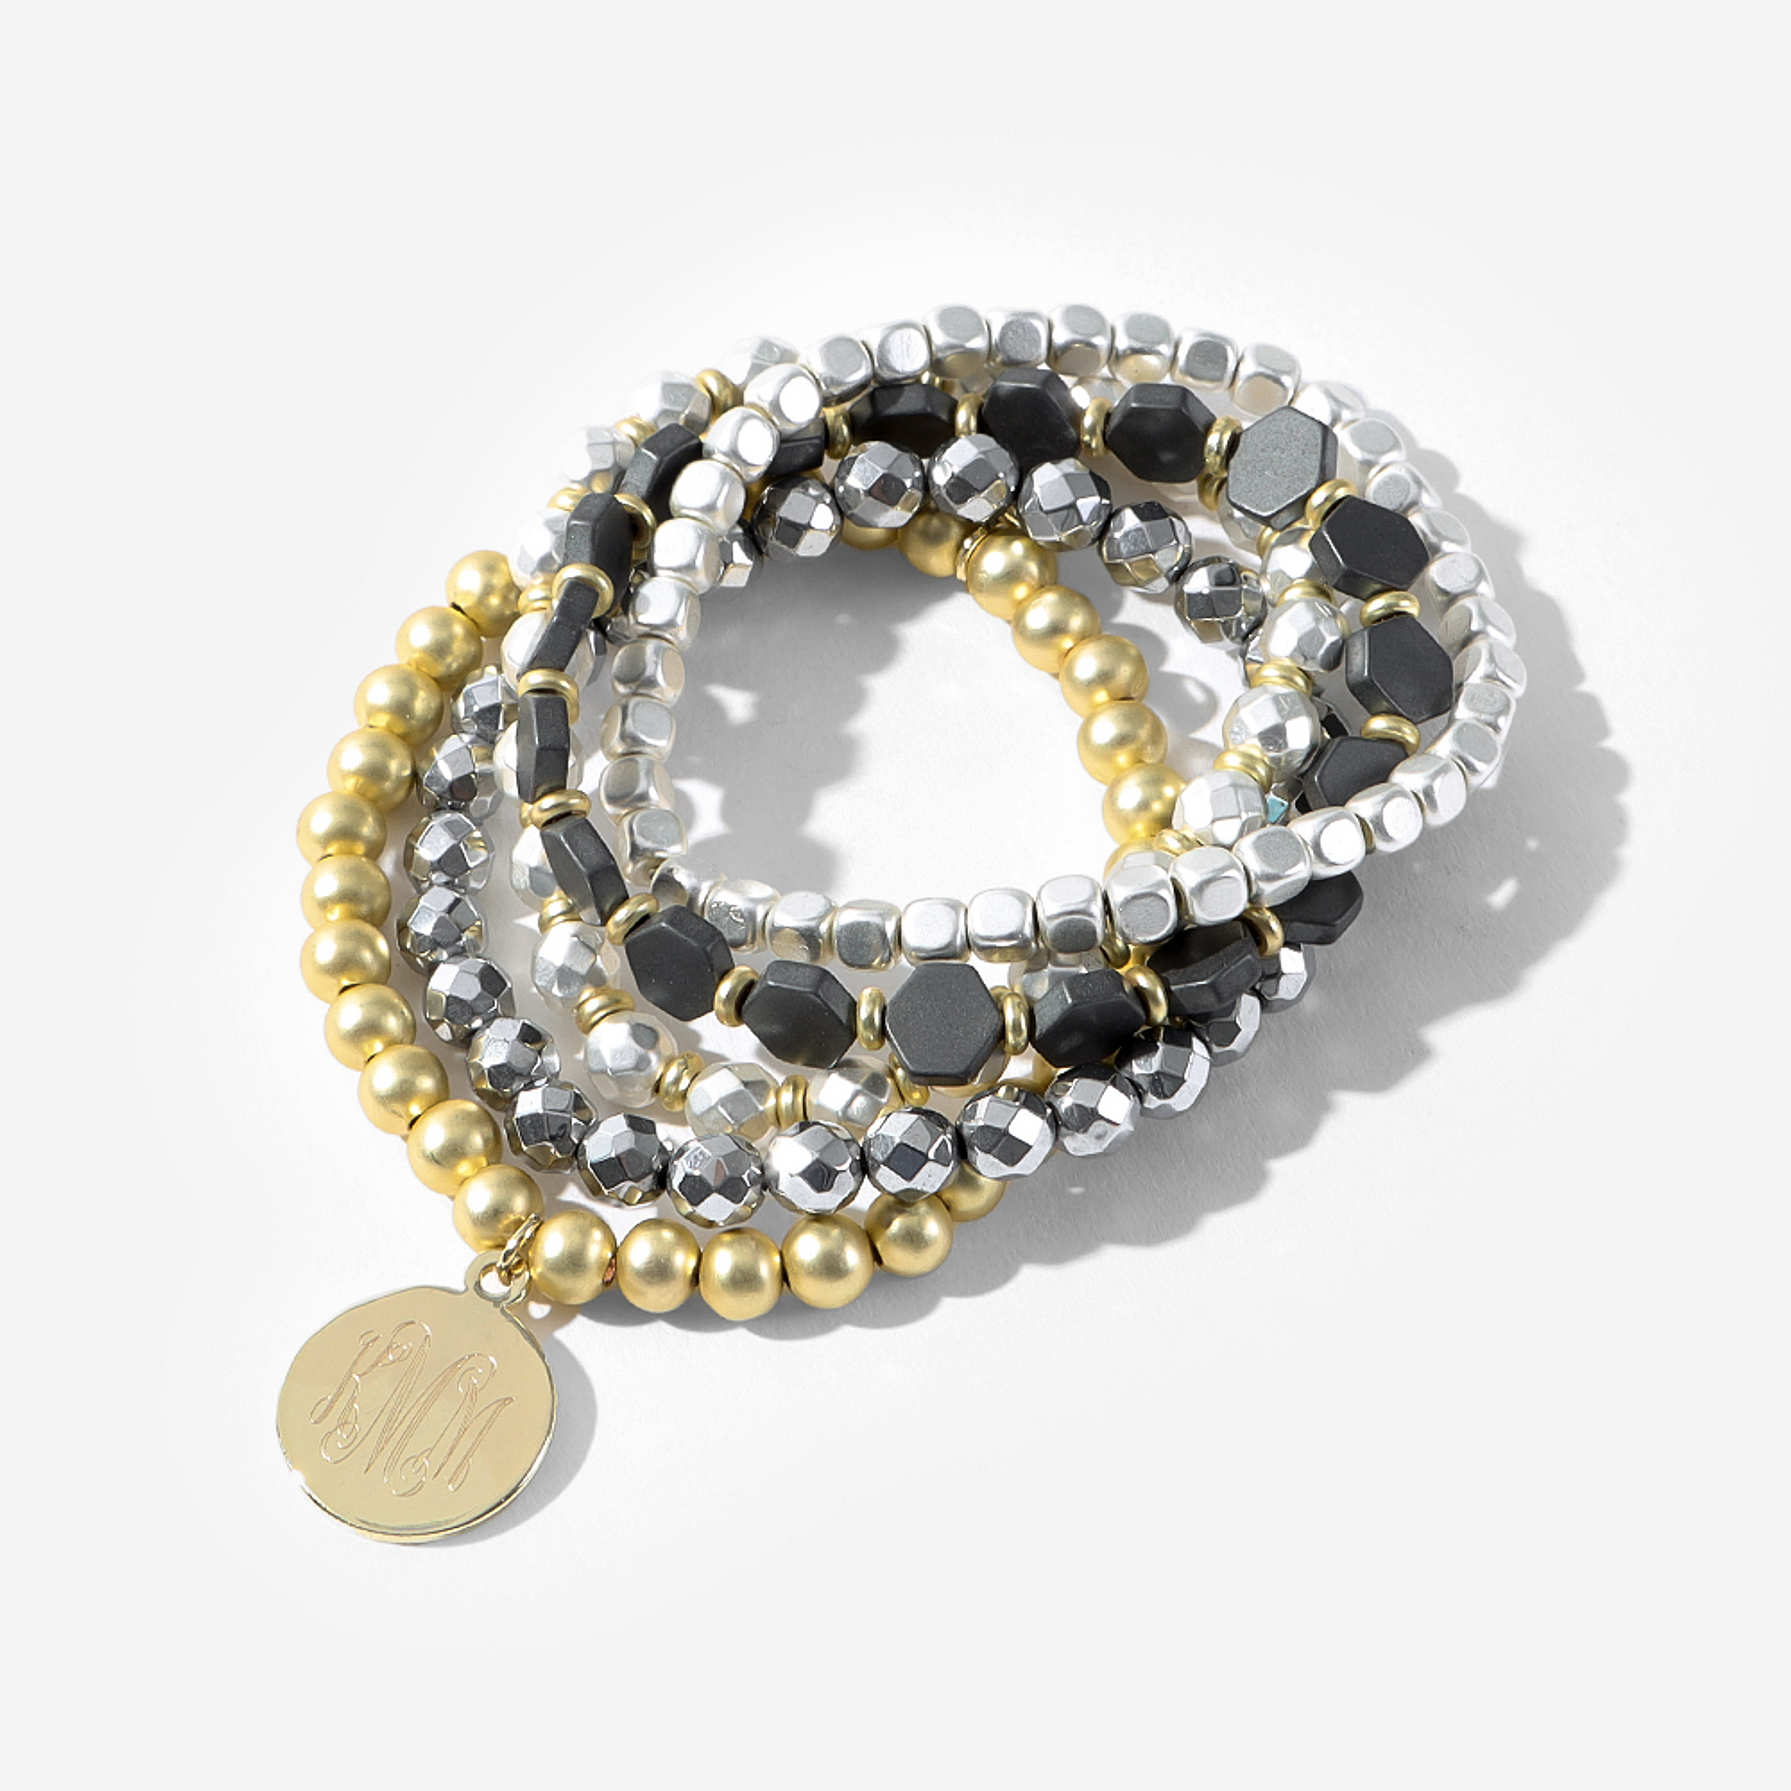 Personalized Metallic Bracelets | Stack of 5 Stretch Bracelets